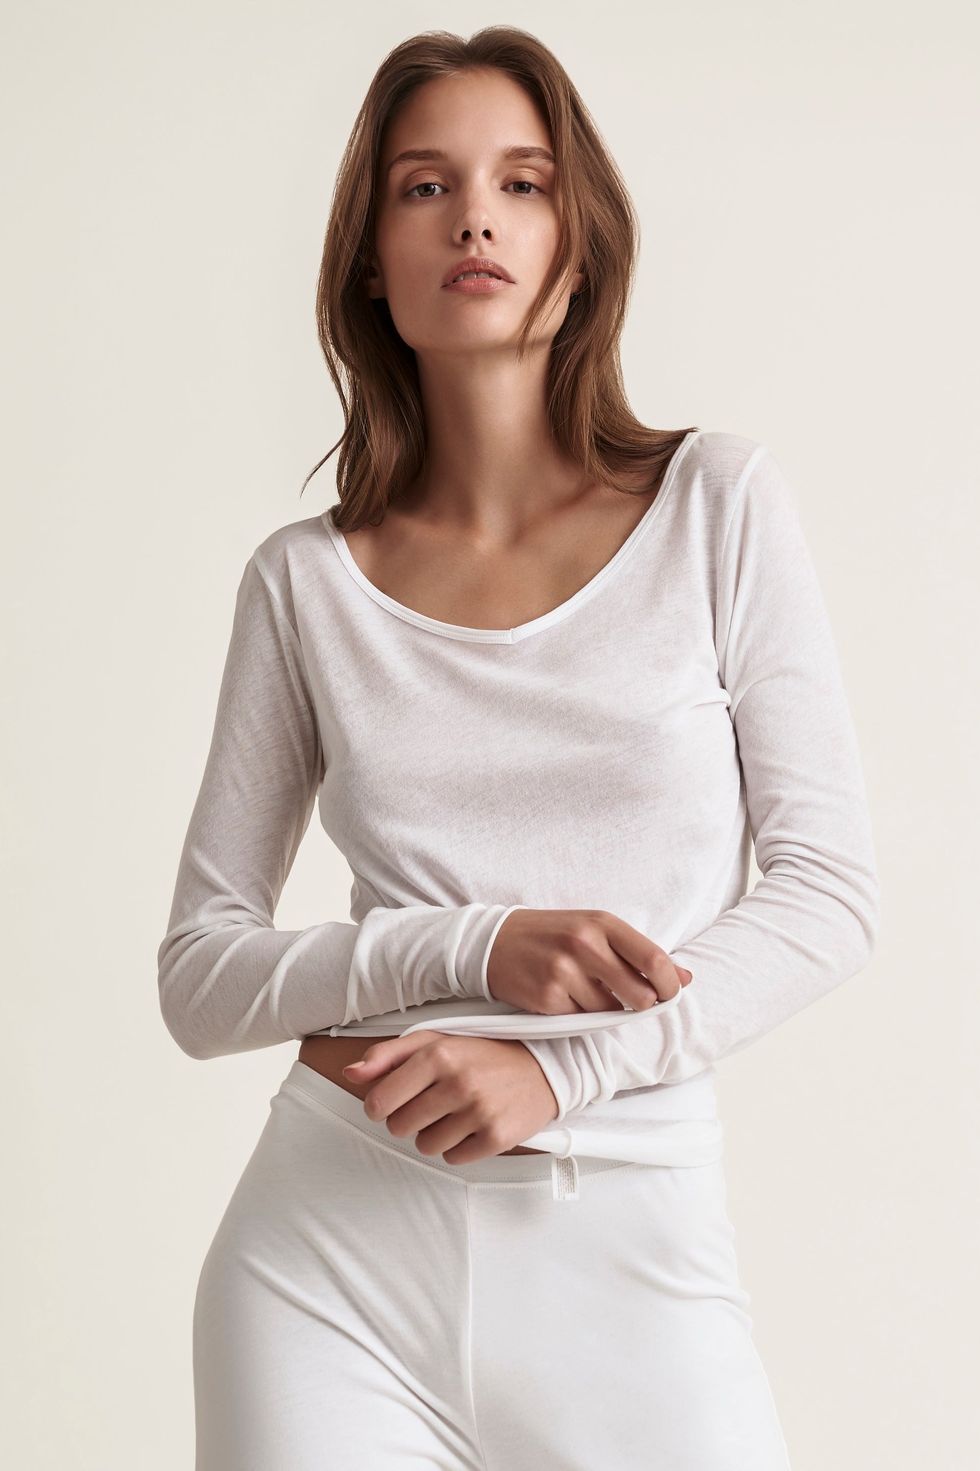 Women's Favorite Long-Sleeve V-Neck T-Shirt